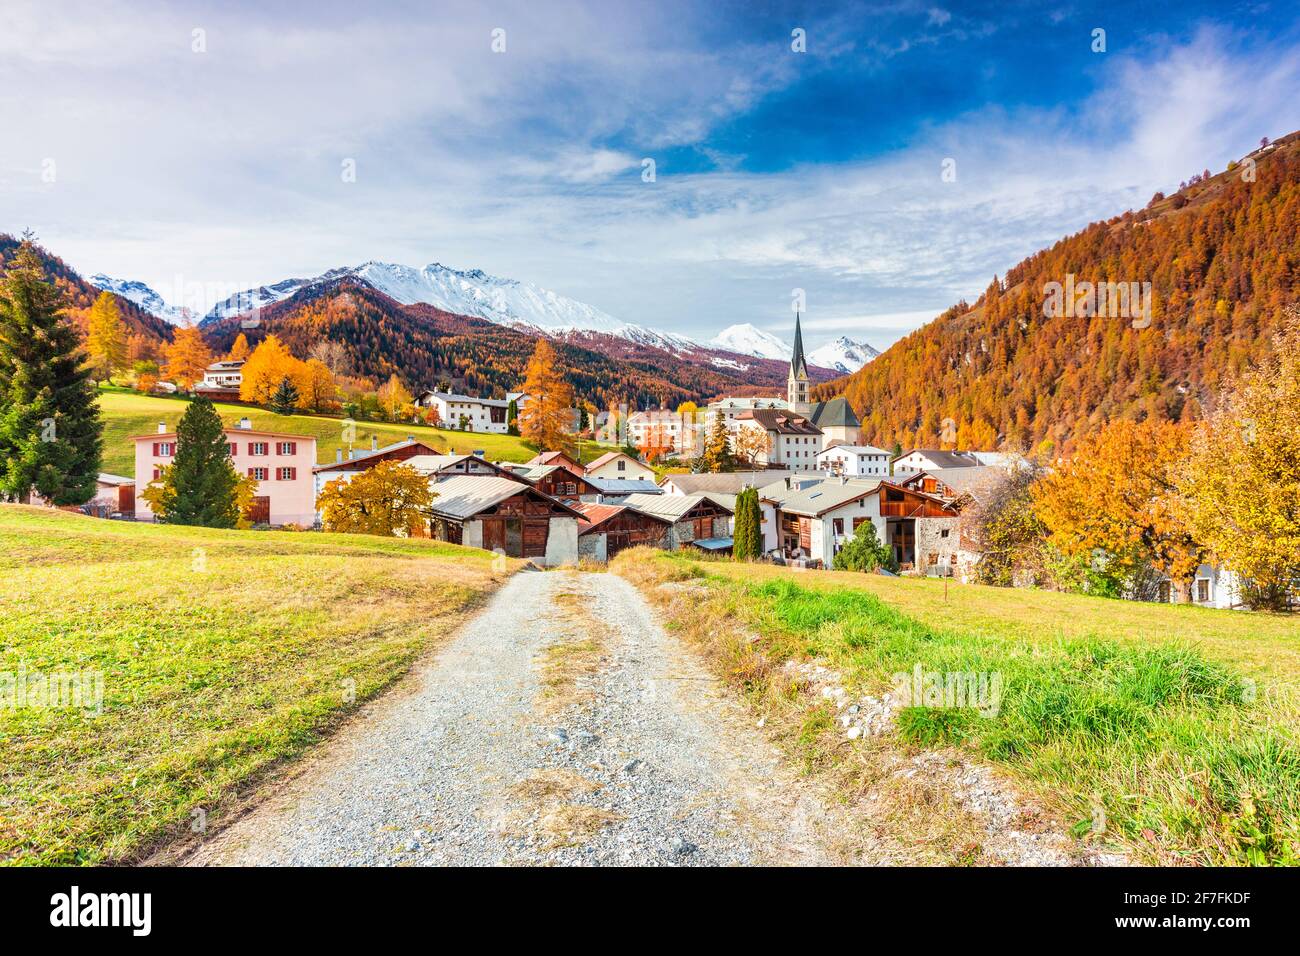 Village suisse traditionnel appelé Santa Maria à Val Mustair, canton Graubunden, Suisse, Europe Banque D'Images